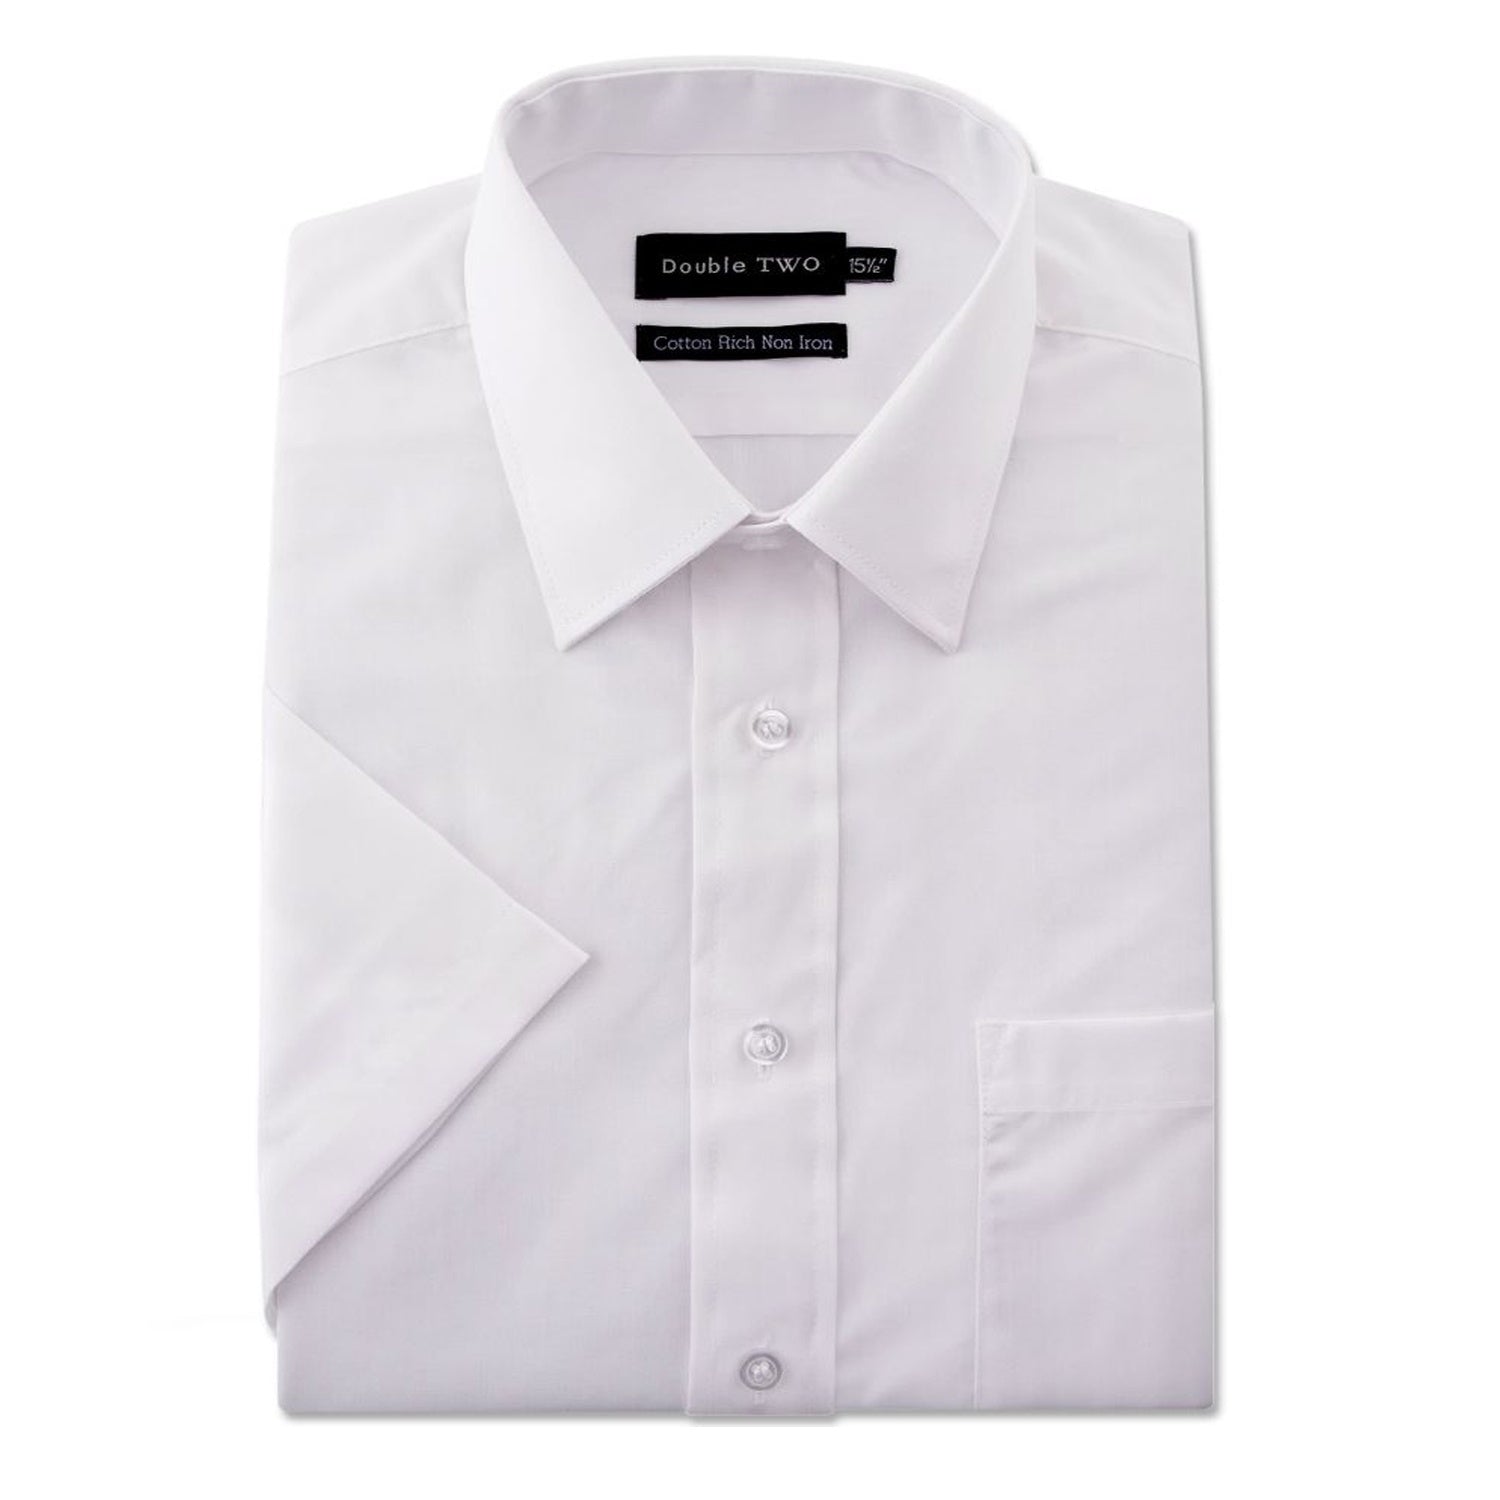 Double Two S/S Non Iron Shirt - SHX4500 - White 1